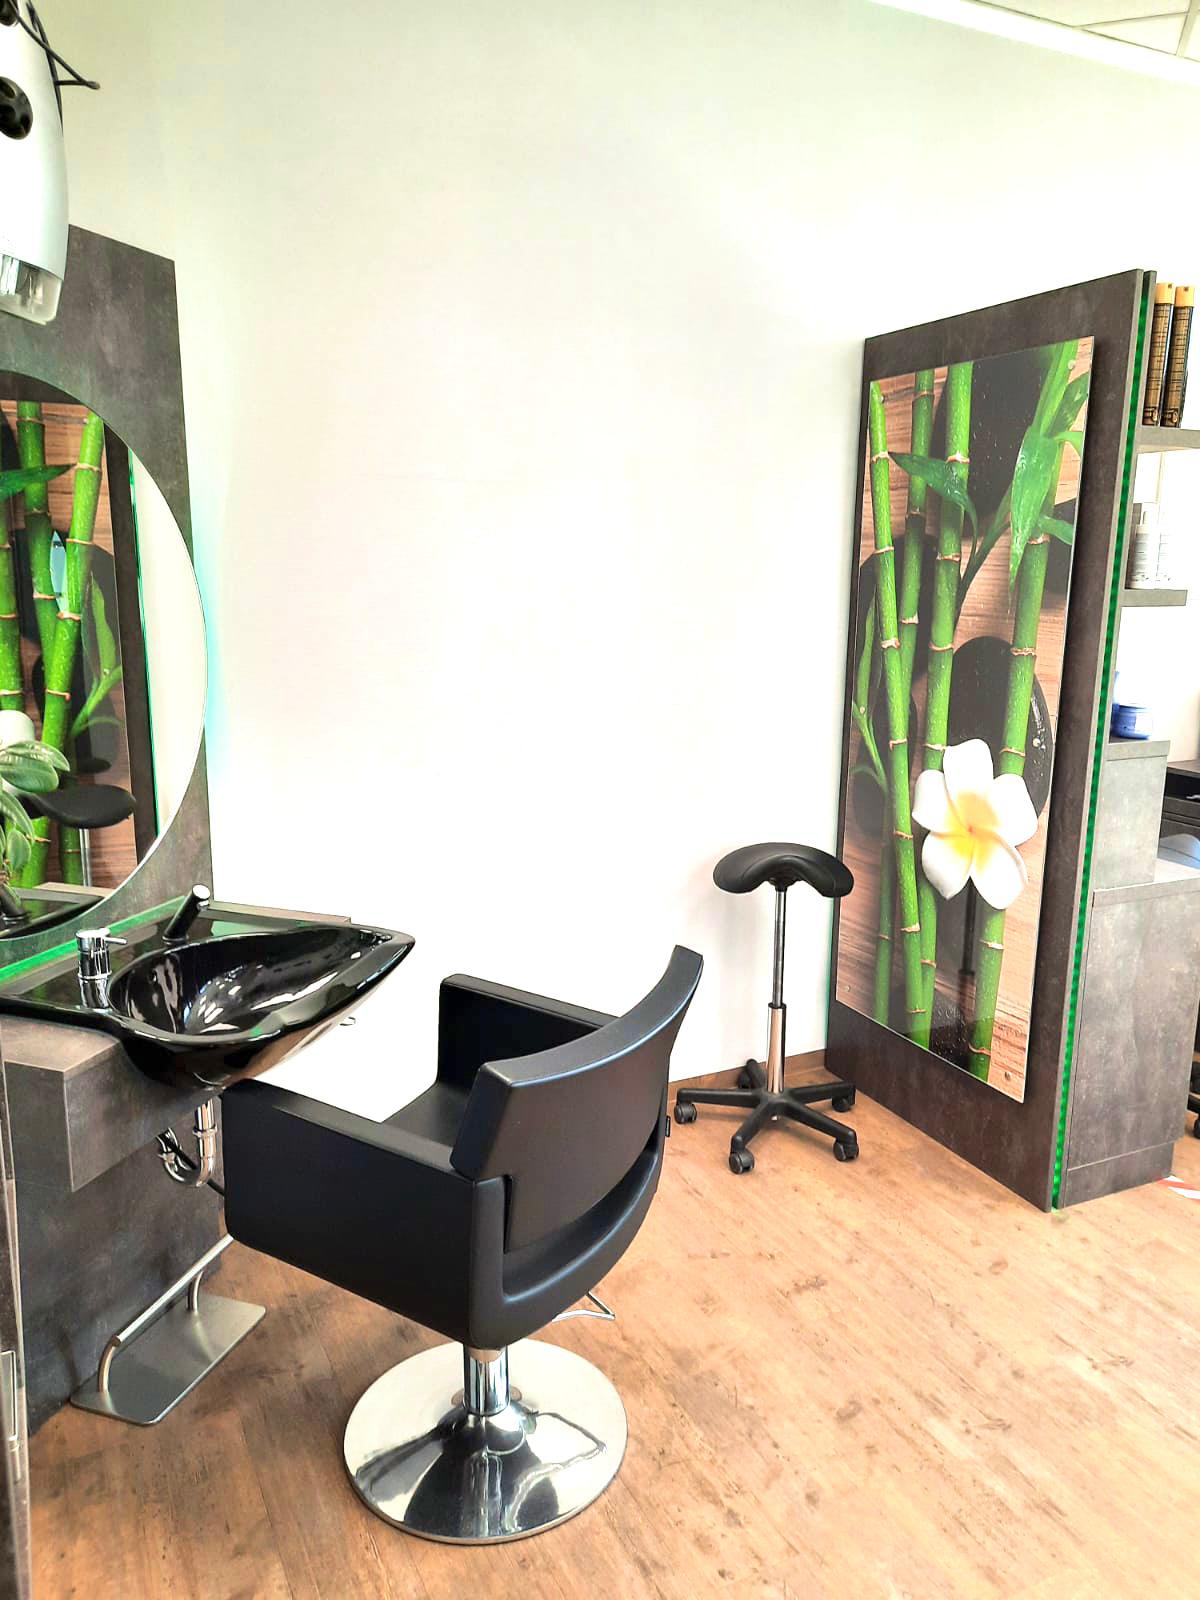 Salon Beauty – Ihr Friseur in Chemnitz, Zwickauer Straße 452 in Chemnitz